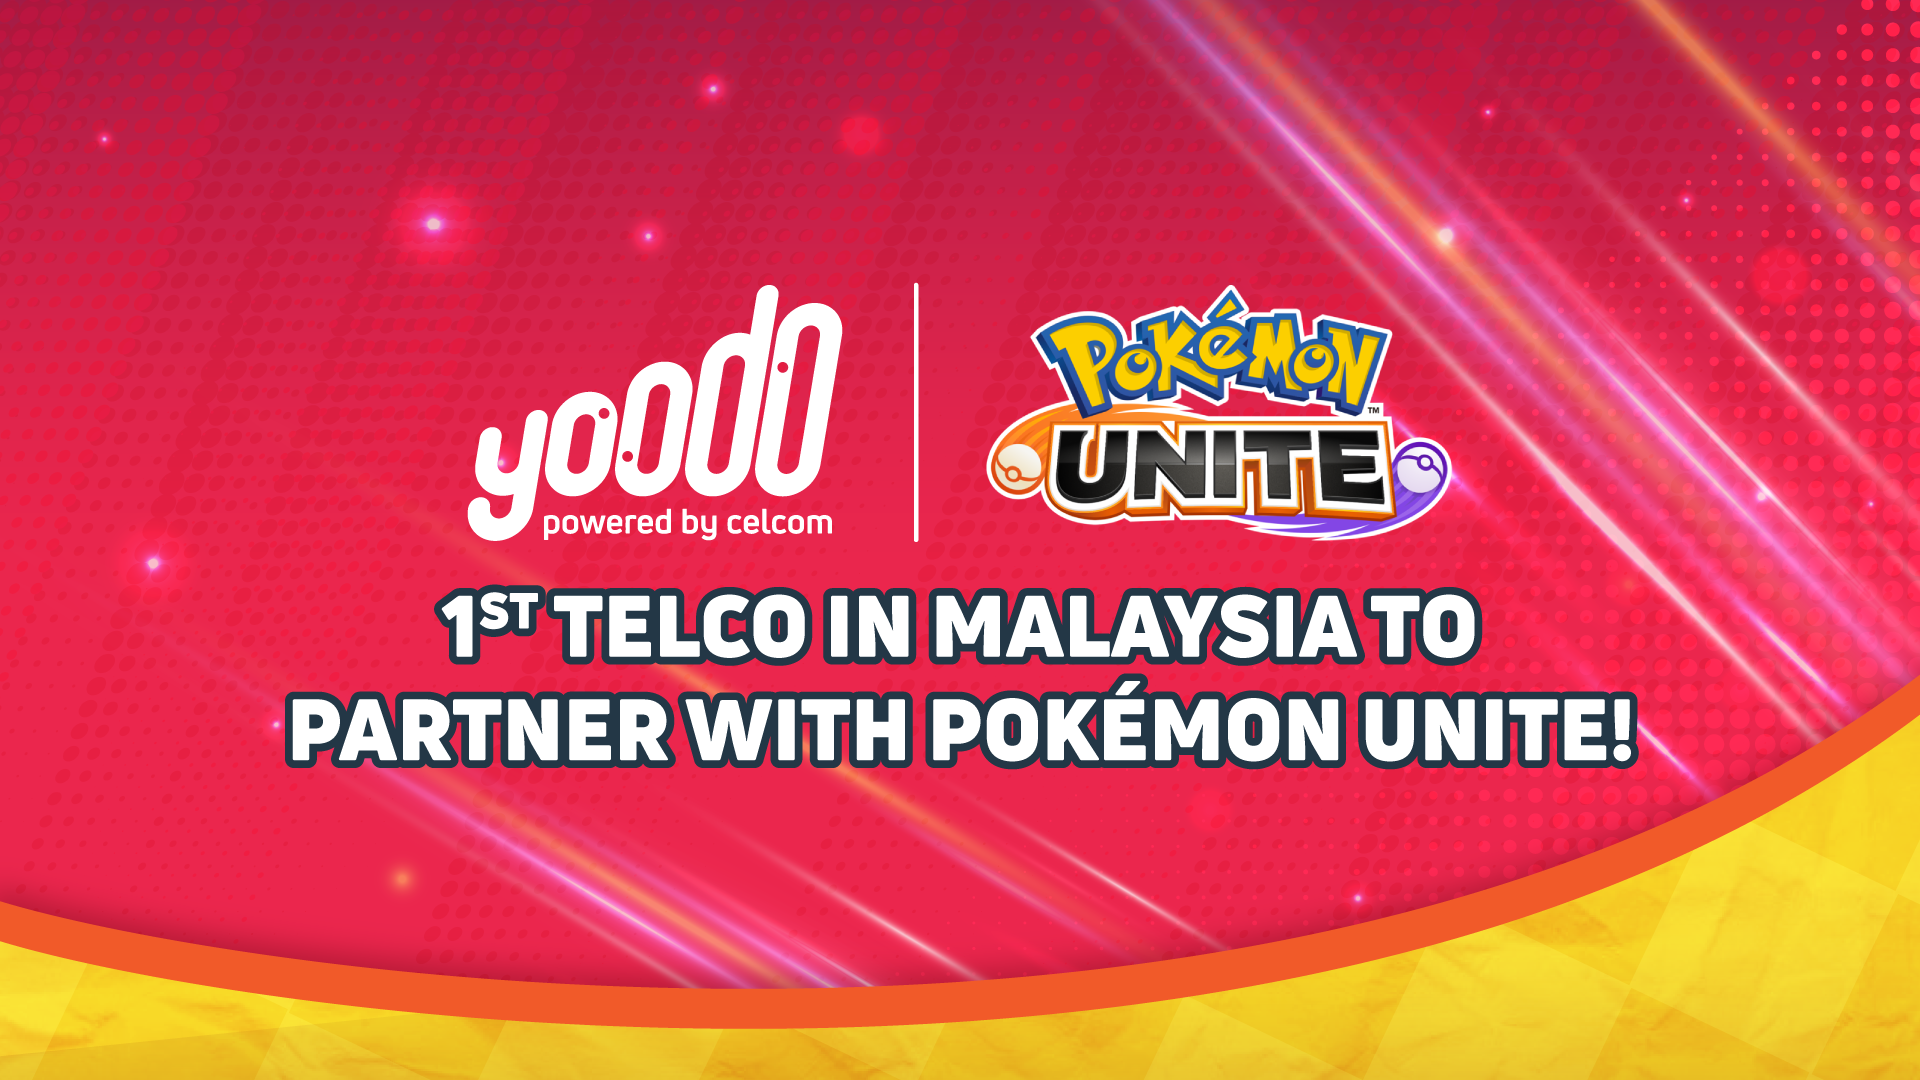 Yoodo cipta sejarah sebagai telco pertama di Malaysia jalin kerjasama dengan The Pokémon Company 3